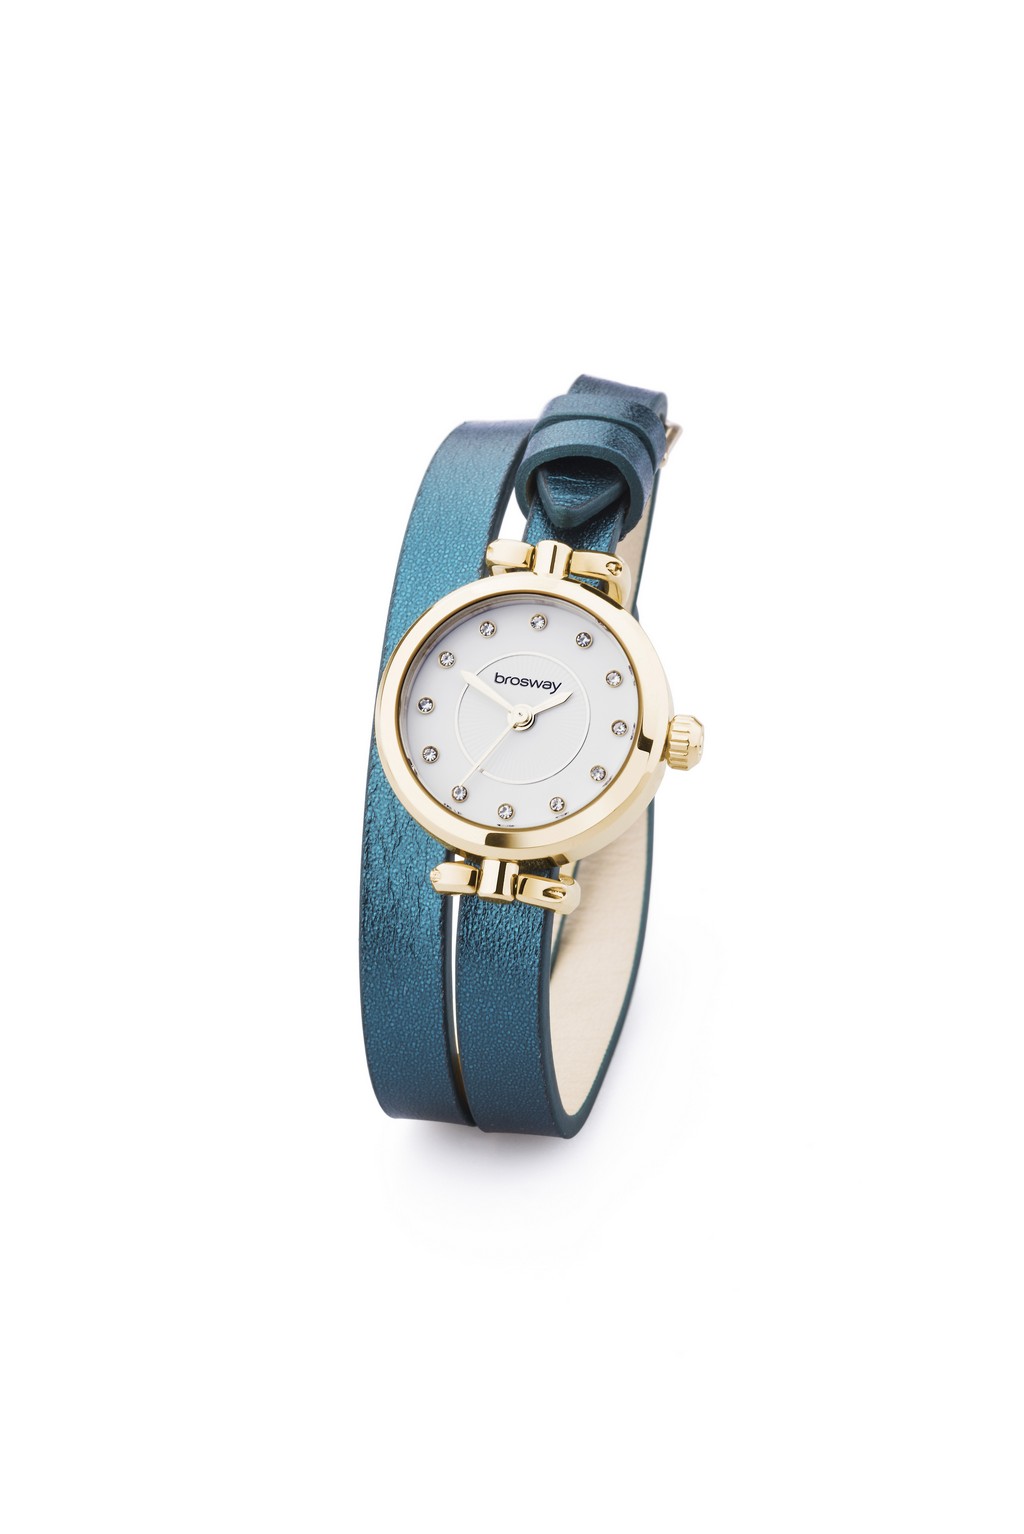 Brosway orologi: presentata la nuova collezione Olivia, le foto